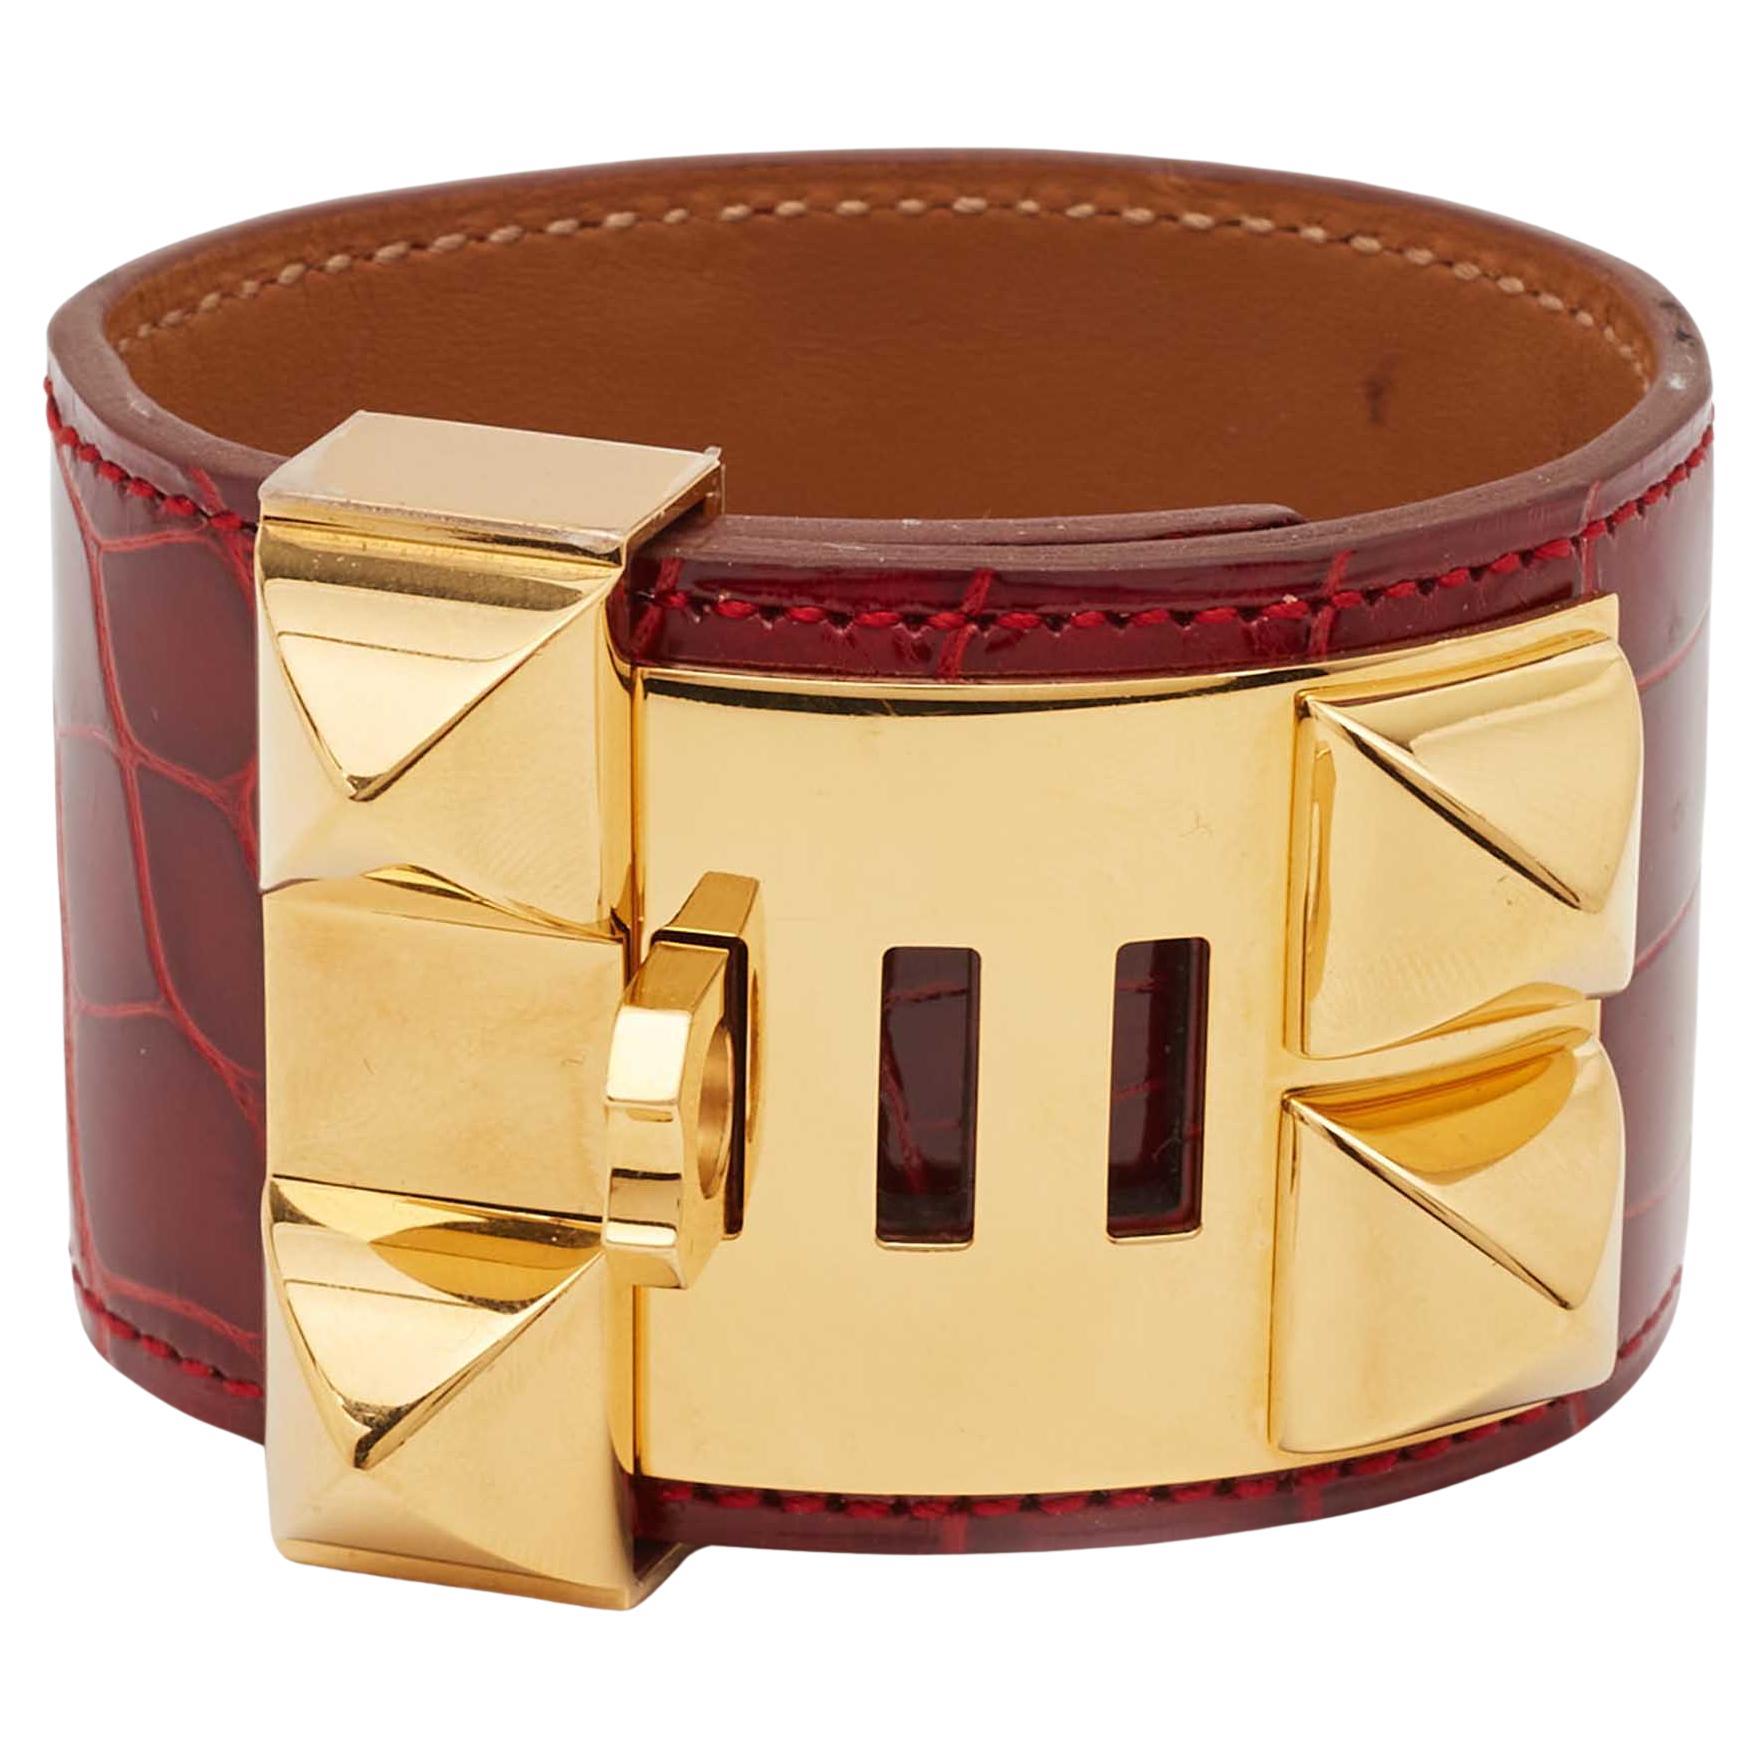 Hermès Collier de Chien Alligator Leather Gold Plated Bracelet